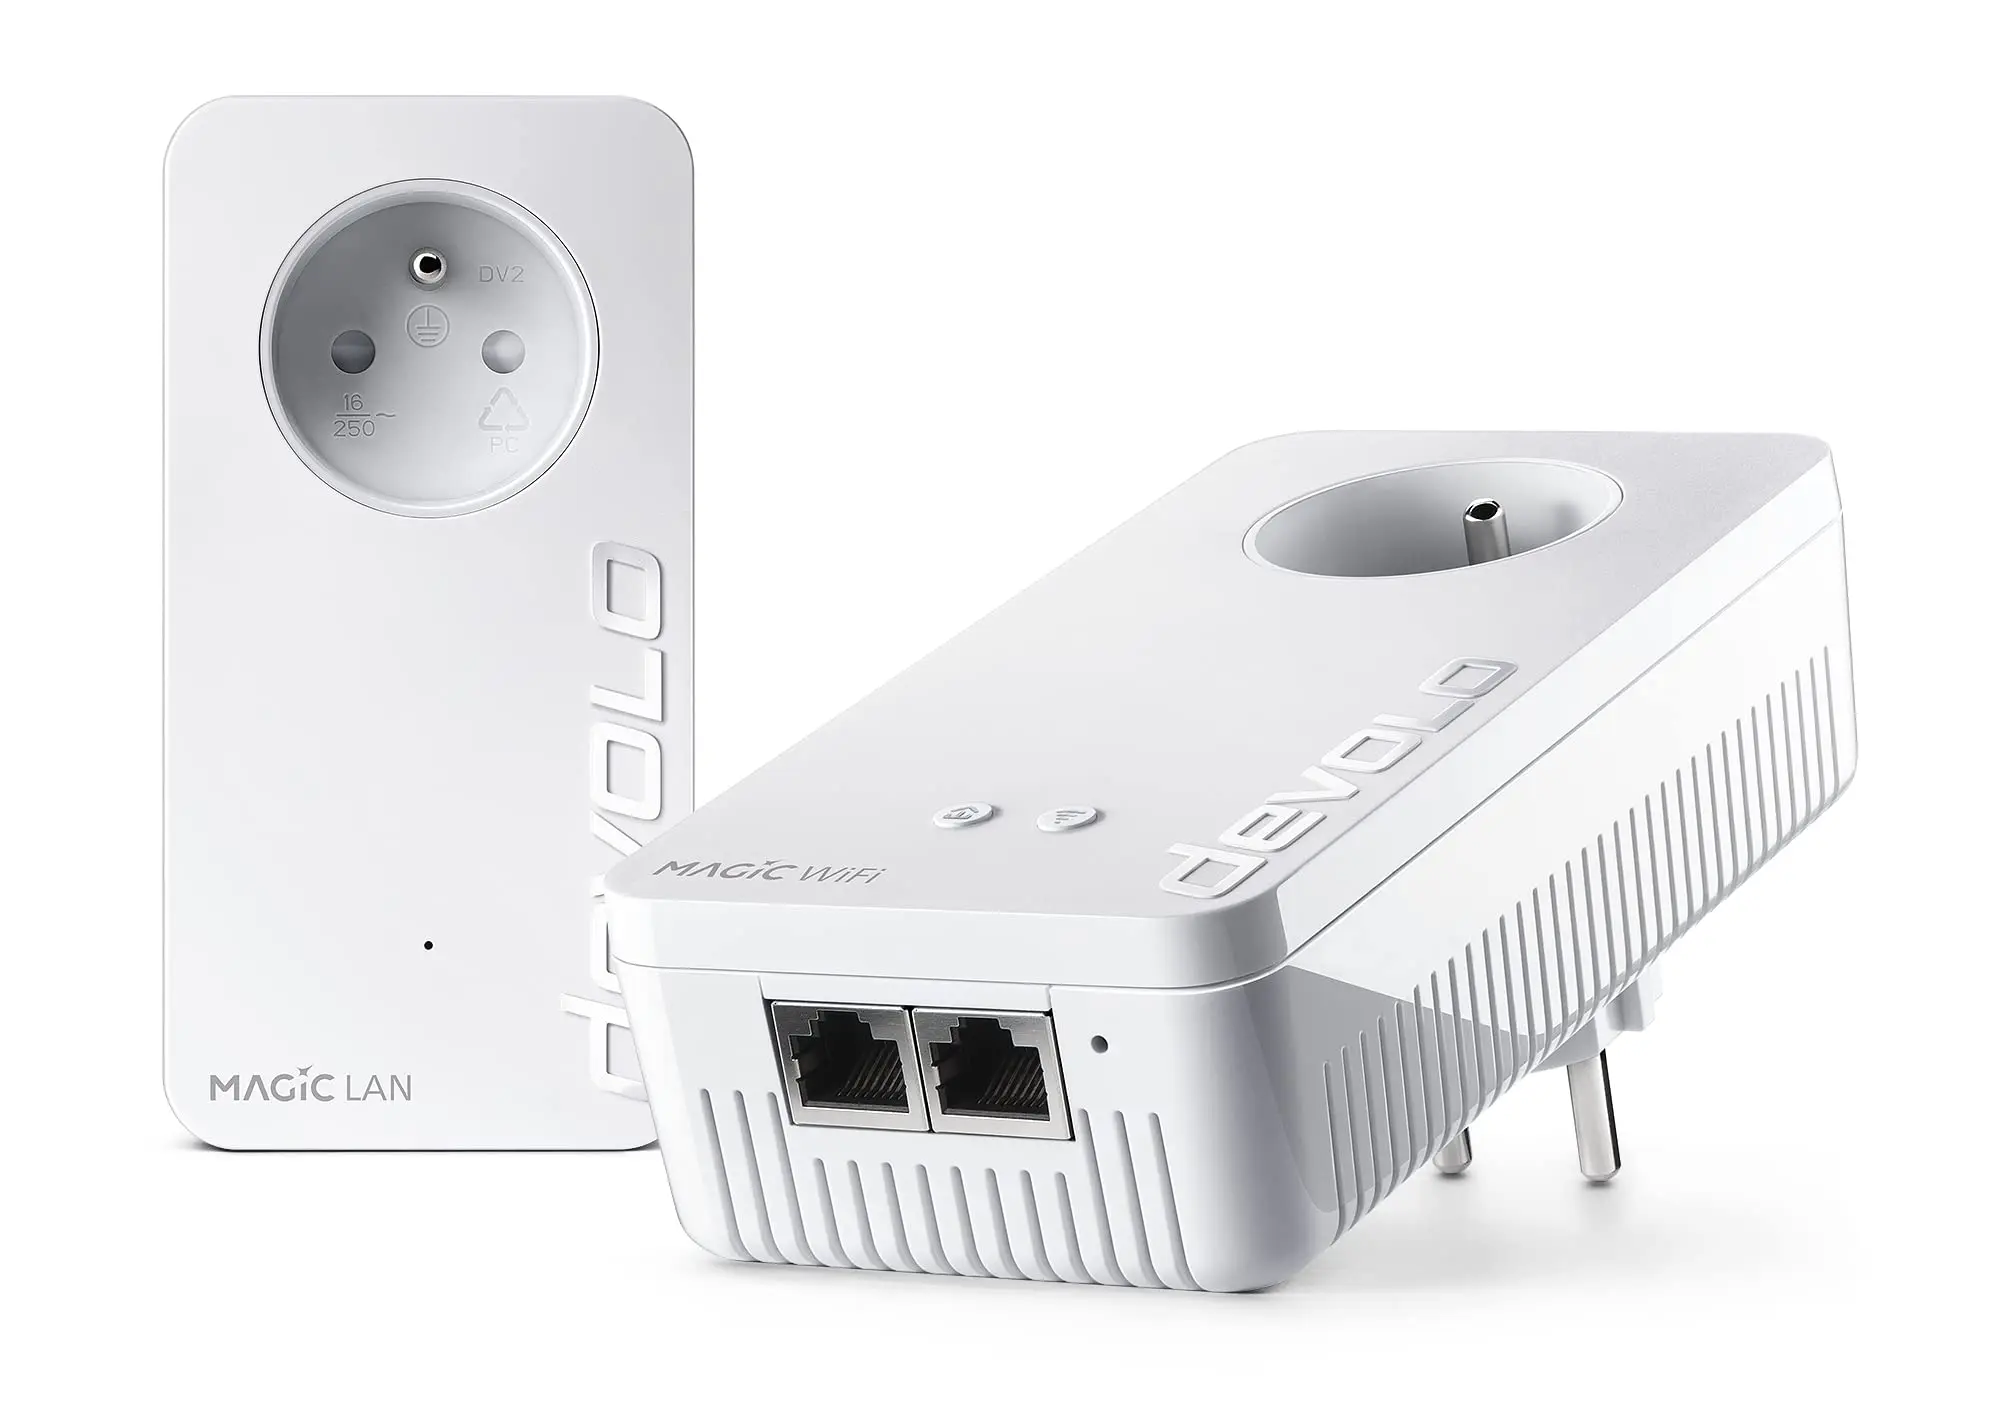 plc con wifi y enchufe - Que utiliza la tecnología PLC para conectarse a Internet